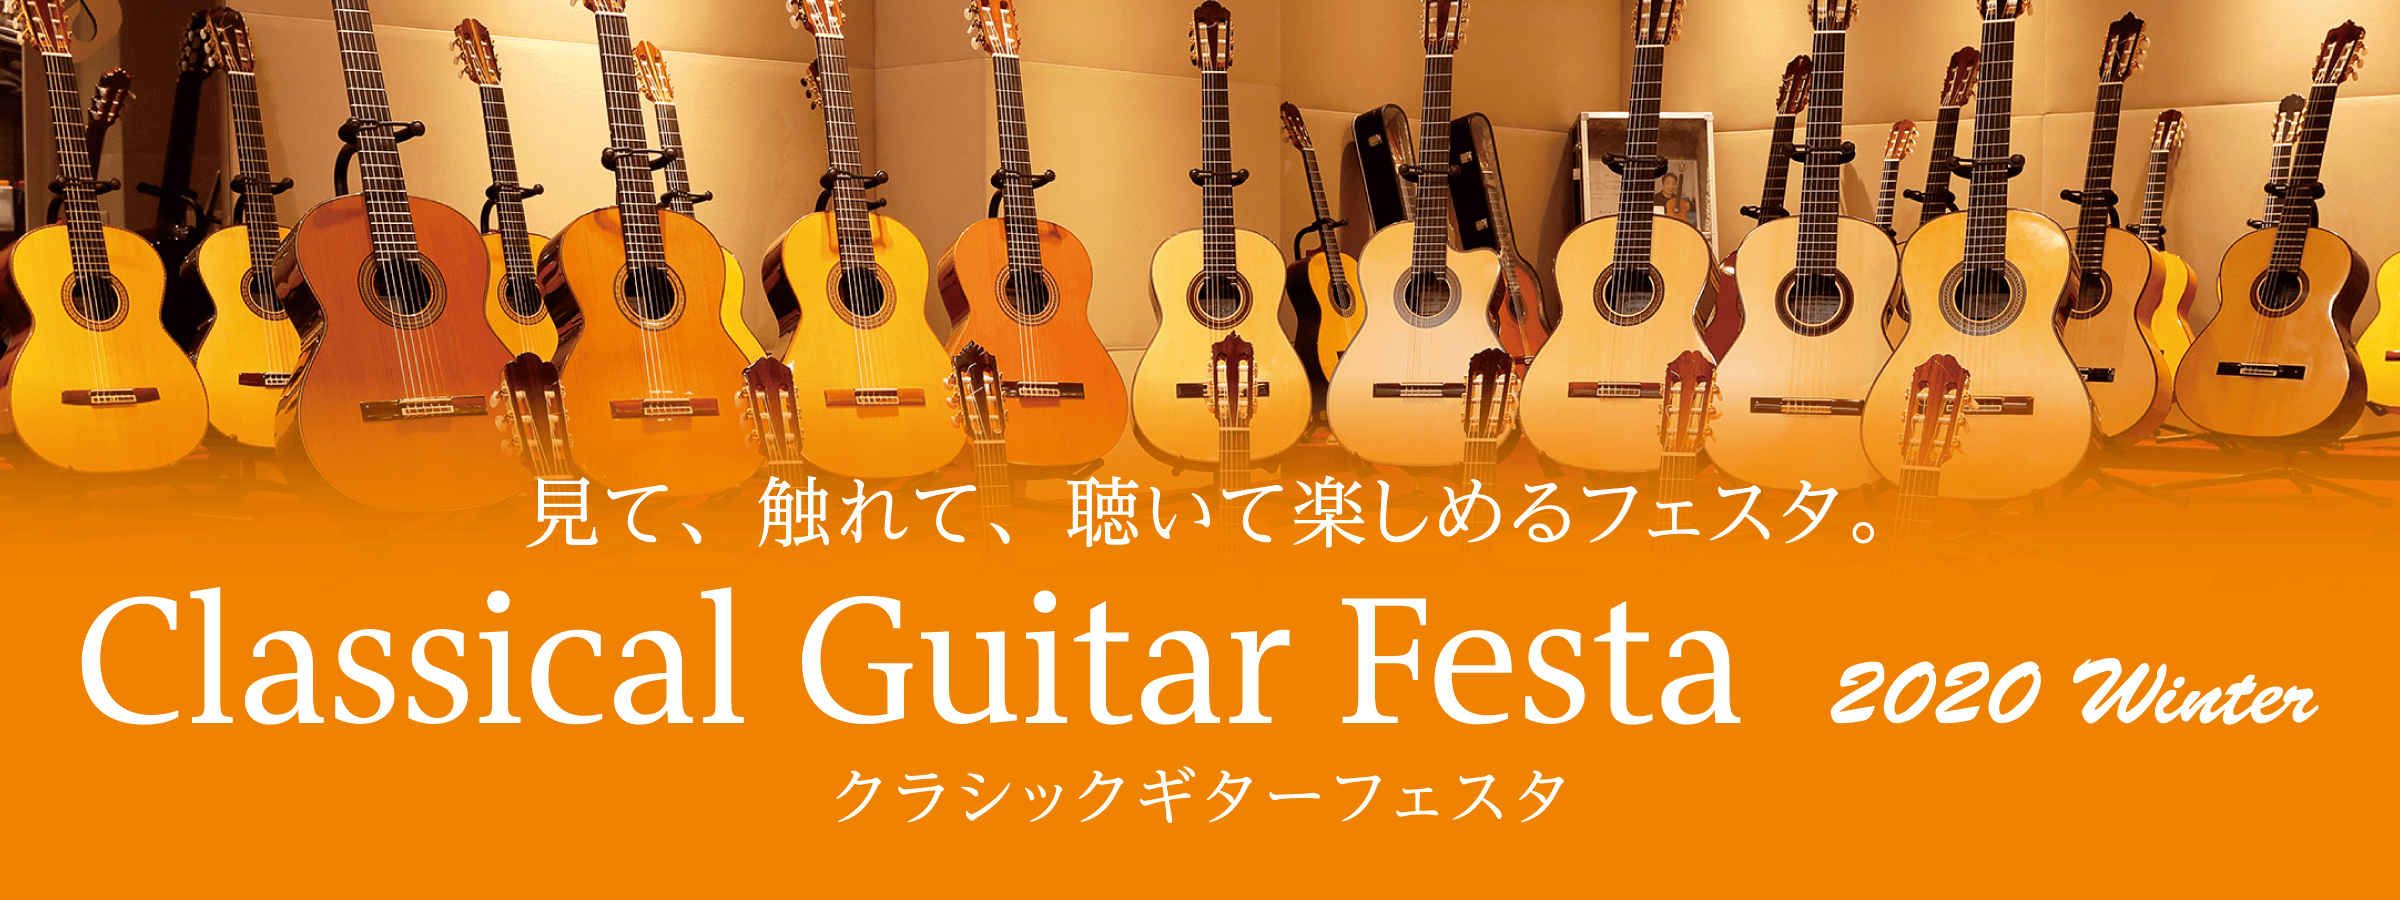 *クラシックギターフェスタ2020Winterイベントインフォメーション クラシックギターの祭典が、今年も島村楽器各店で開催！]]国内外の有名ブランドが一堂に会し当日は展示しているすべてのギターをご試奏いただけます。]]プロの演奏会や点検会、講演会など、クラシックギター初心者から、経験の長いプレイヤ […]